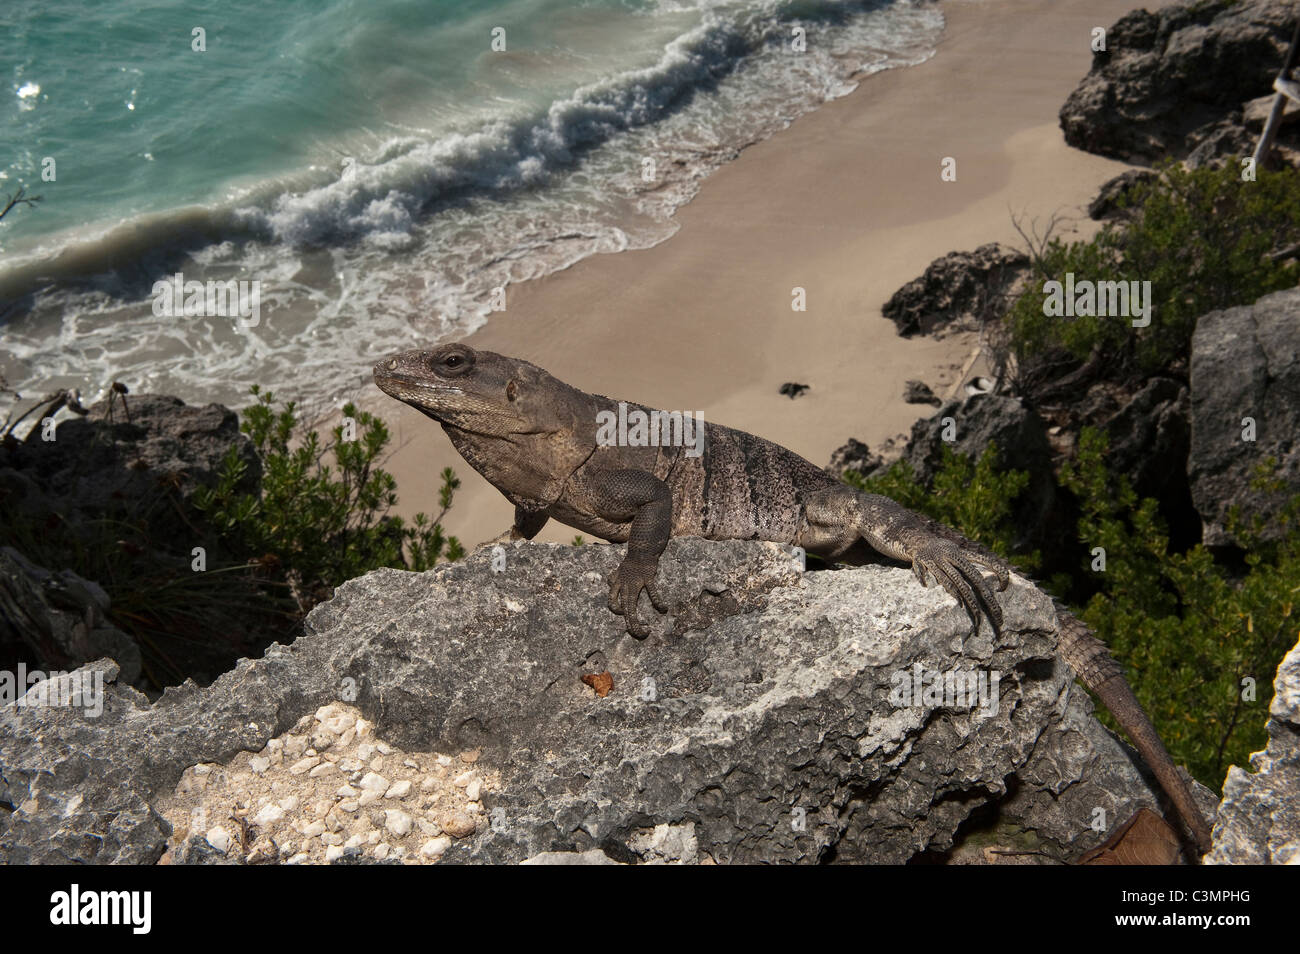 Nero (Iguana Ctenosaura similis) su una scogliera alta sopra la spiaggia. Sian Ka'an Riserva della Biosfera, la penisola dello Yucatan, Messico. Foto Stock